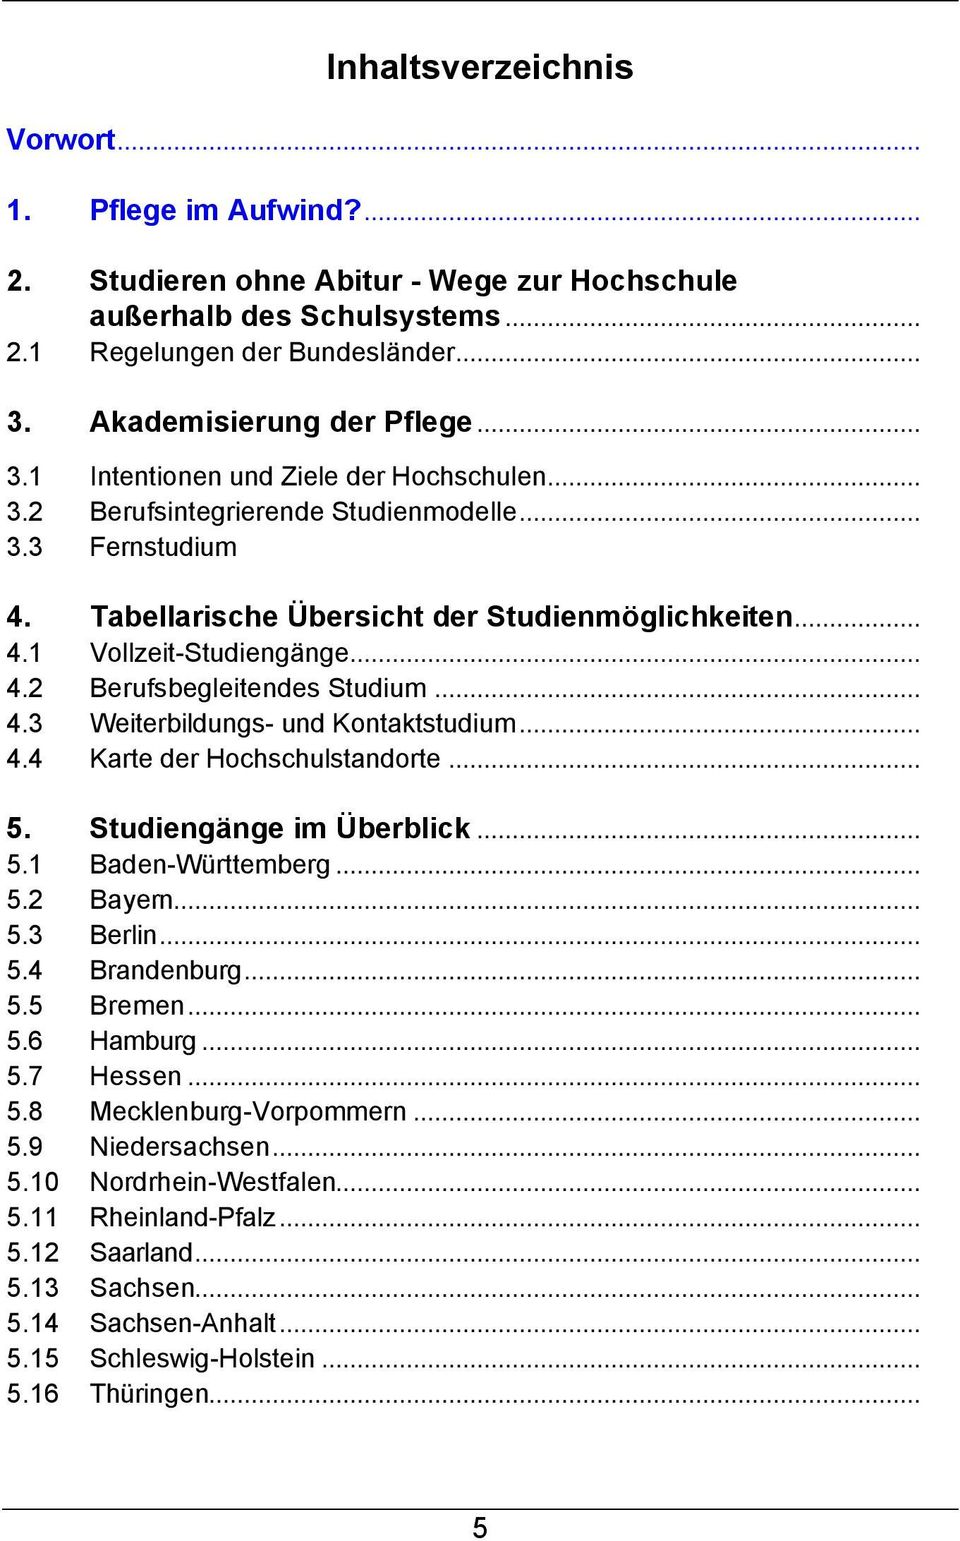 .. 4.2 Berufsbegleitendes Studium... 4.3 Weiterbildungs- und Kontaktstudium... 4.4 Karte der Hochschulstandorte... 5. Studiengänge im Überblick... 5.1 Baden-Württemberg... 5.2 Bayern... 5.3 Berlin... 5.4 Brandenburg.